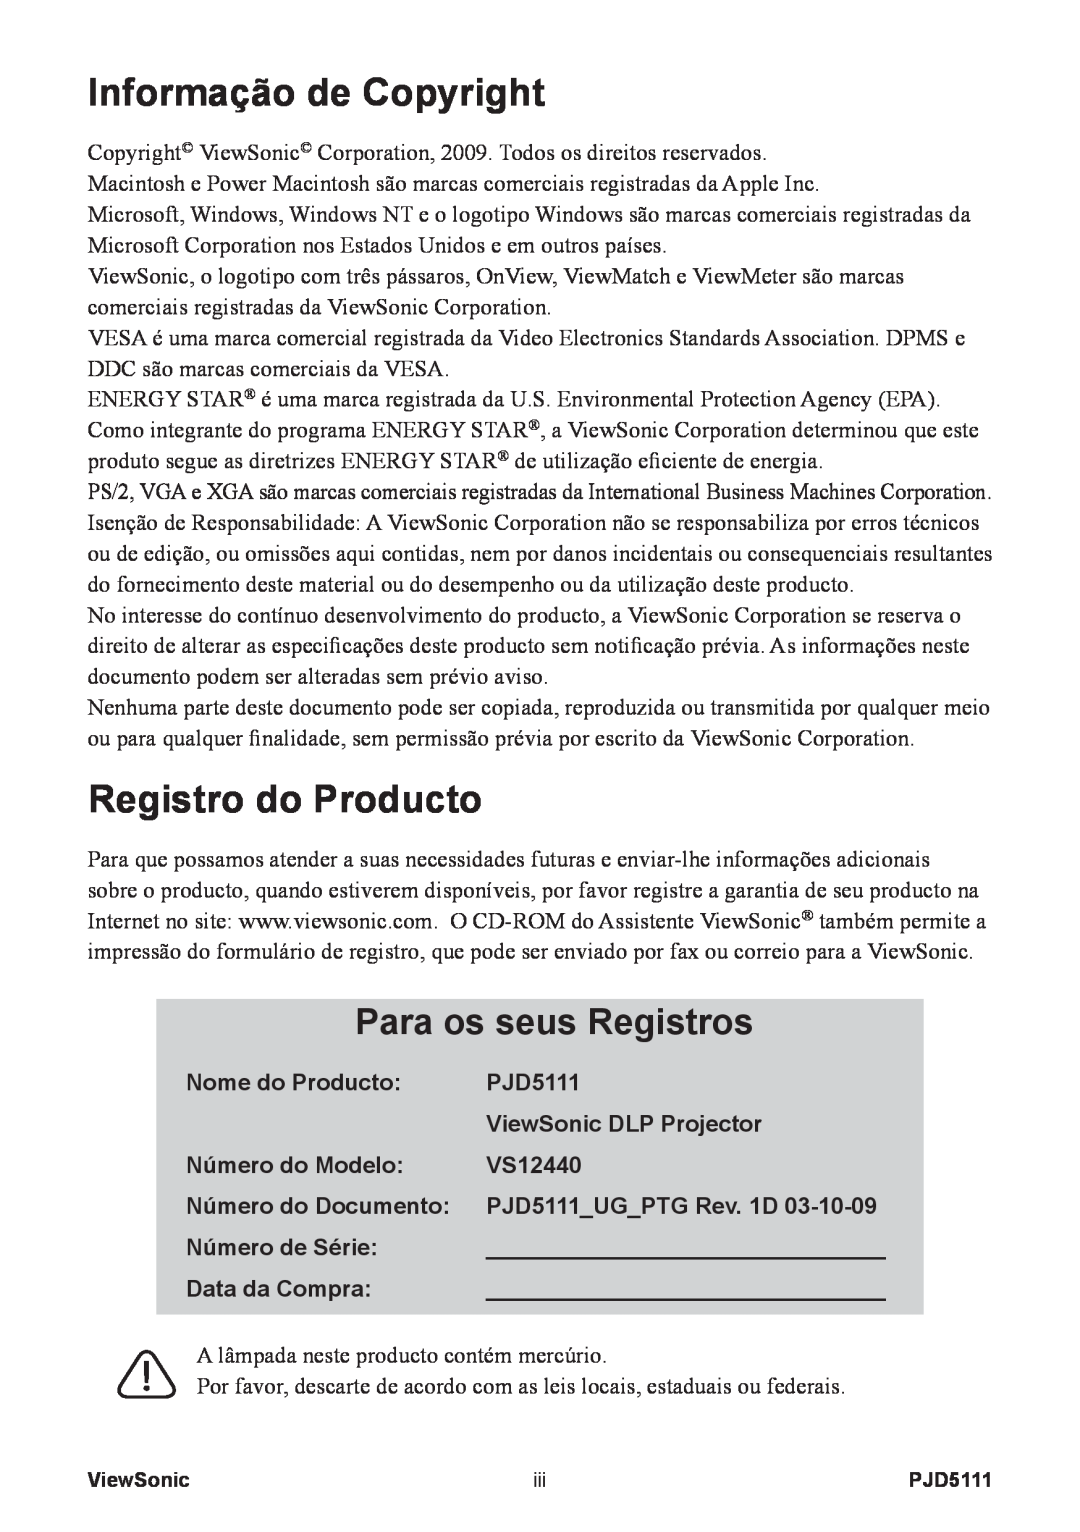 ViewSonic VS12440 manual Informação de Copyright, Registro do Producto, Para os seus Registros, Nome do Producto, PJD5111 